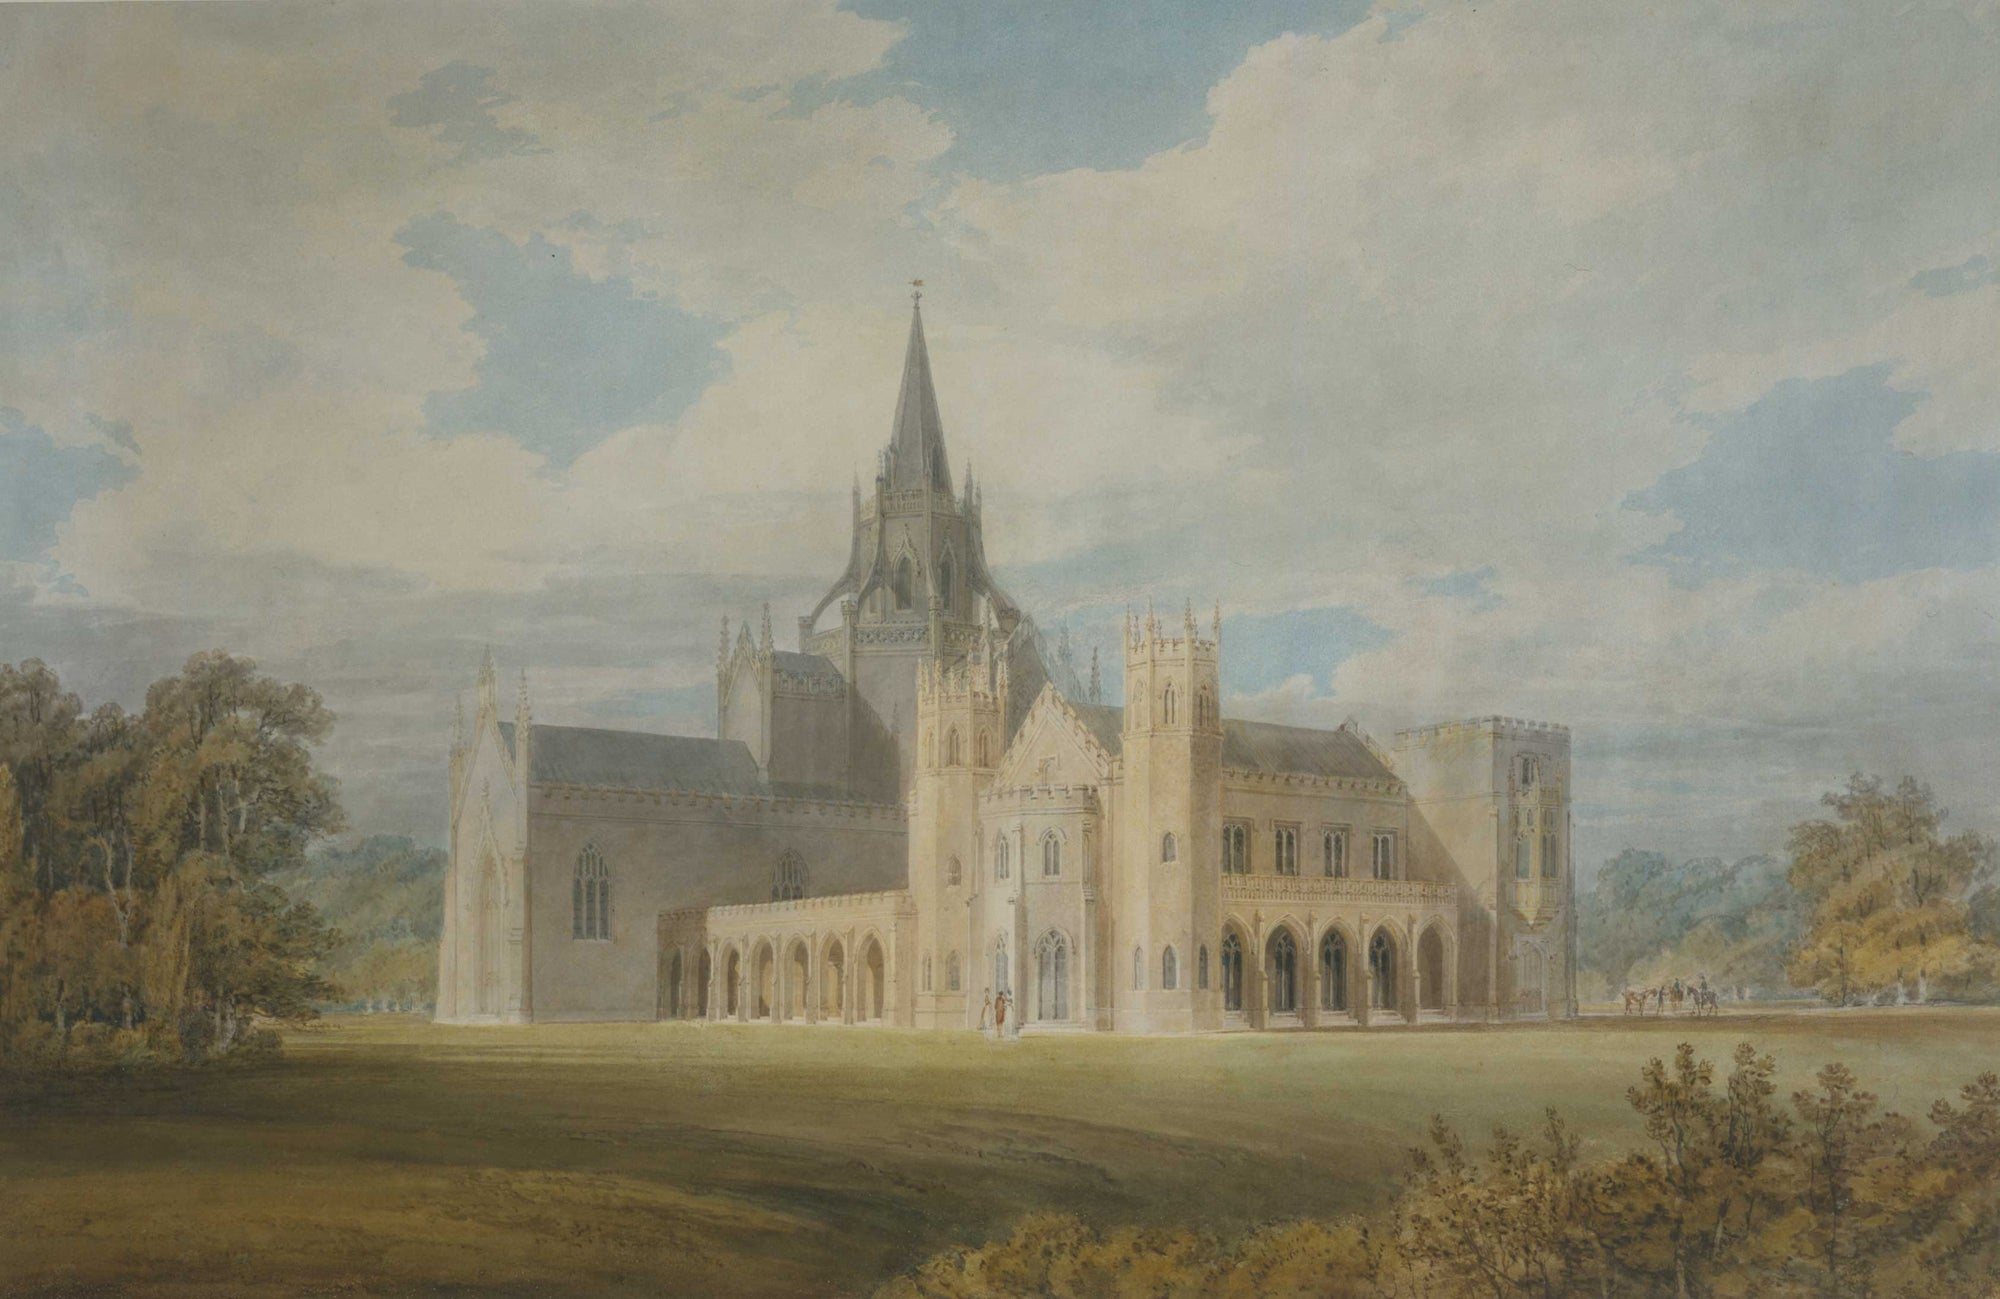 Vue en perspective de l'abbaye de Fonthill depuis le sud-ouest - William Turner